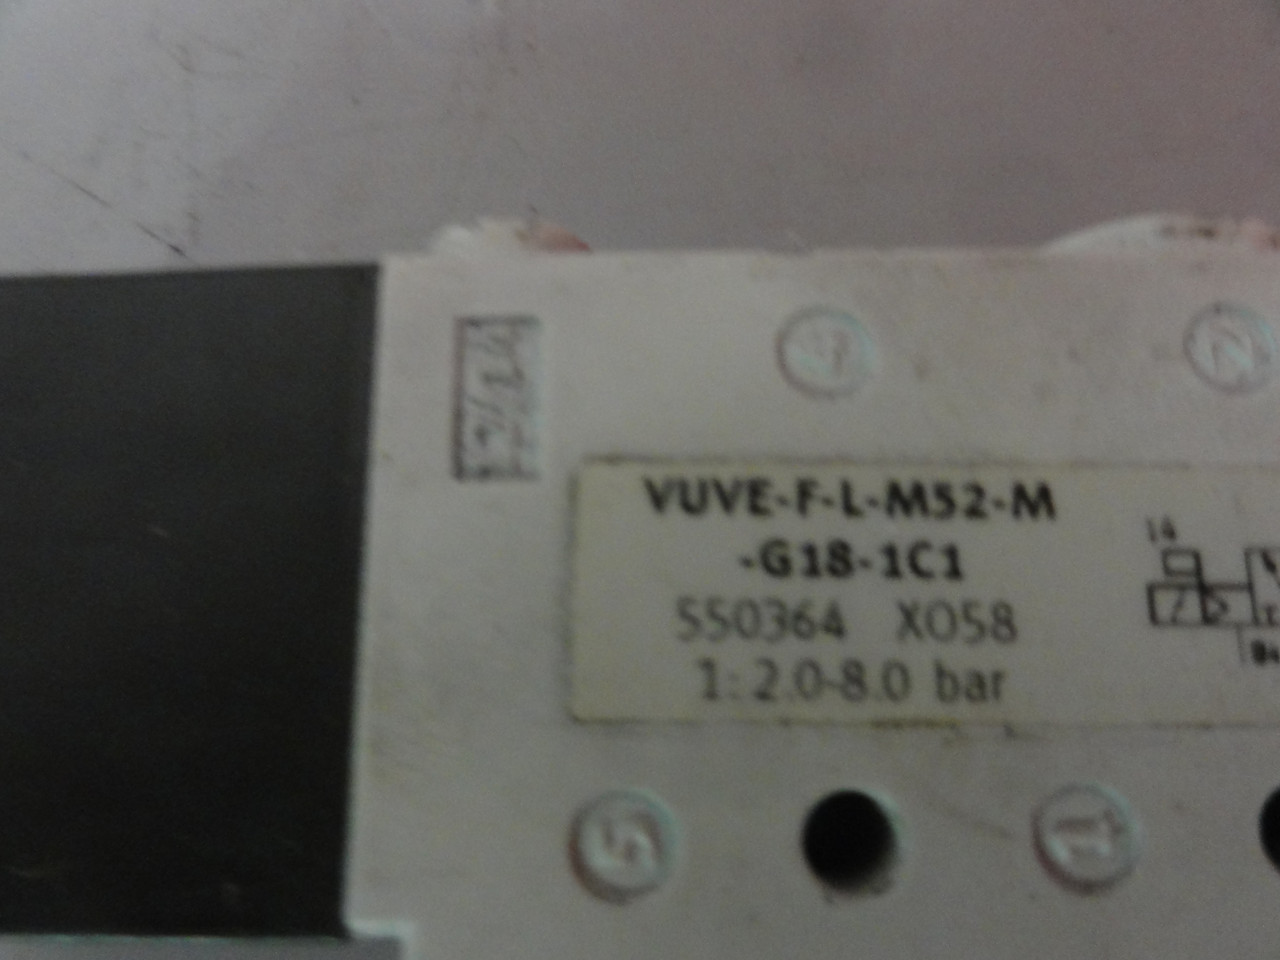 Festo VUVE-F-L-M52-M-G18-1C1 Solenoid Valve